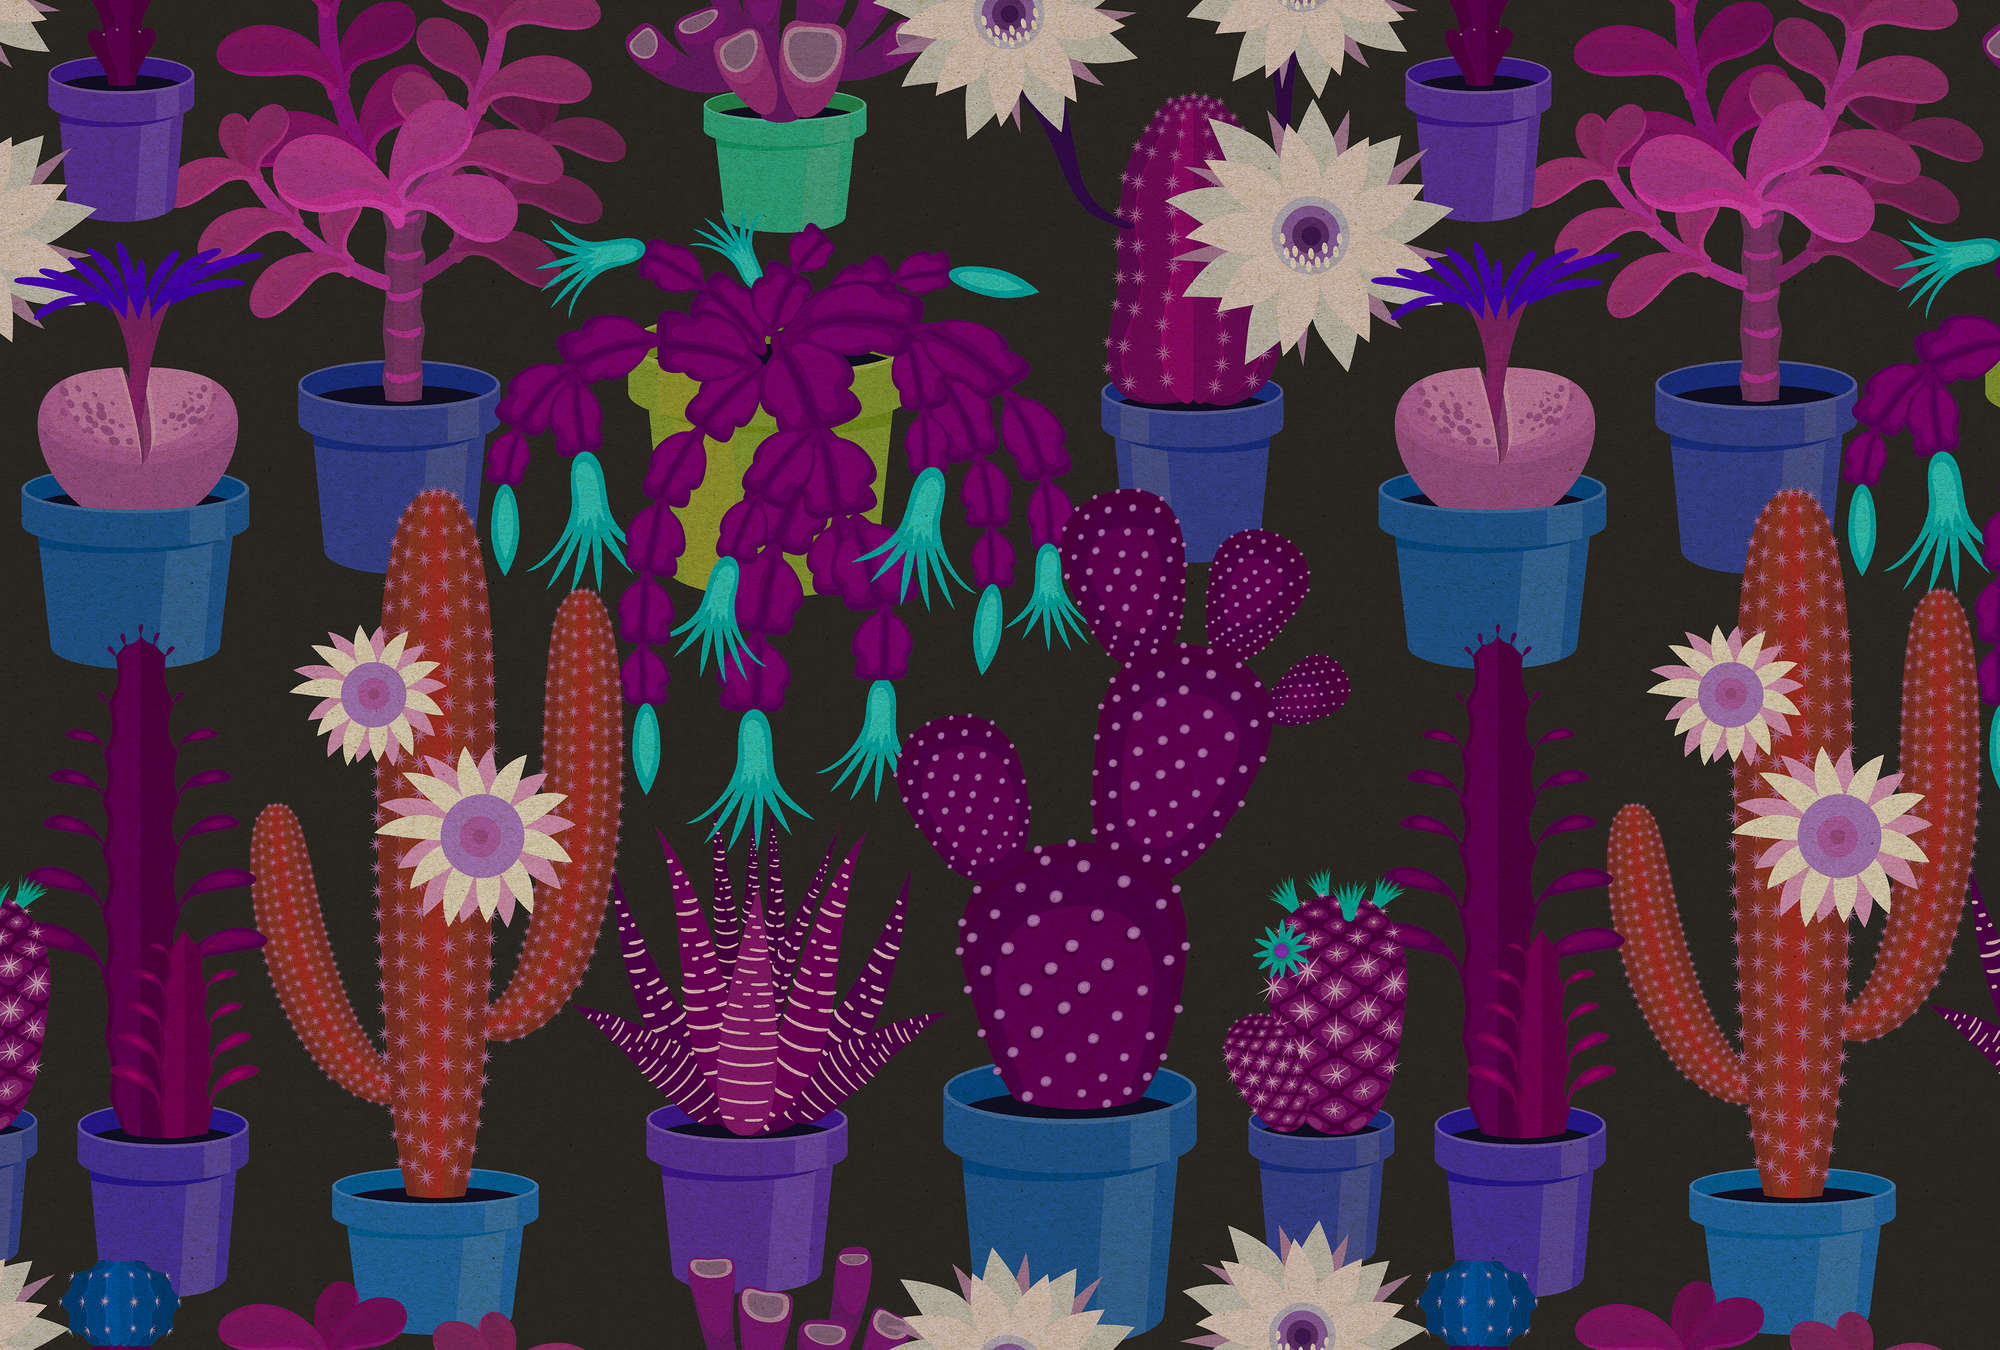             Cactus garden 1 - Papier peint structure carton avec cactus multicolores style bande dessinée - bleu, orange | intissé lisse nacré
        